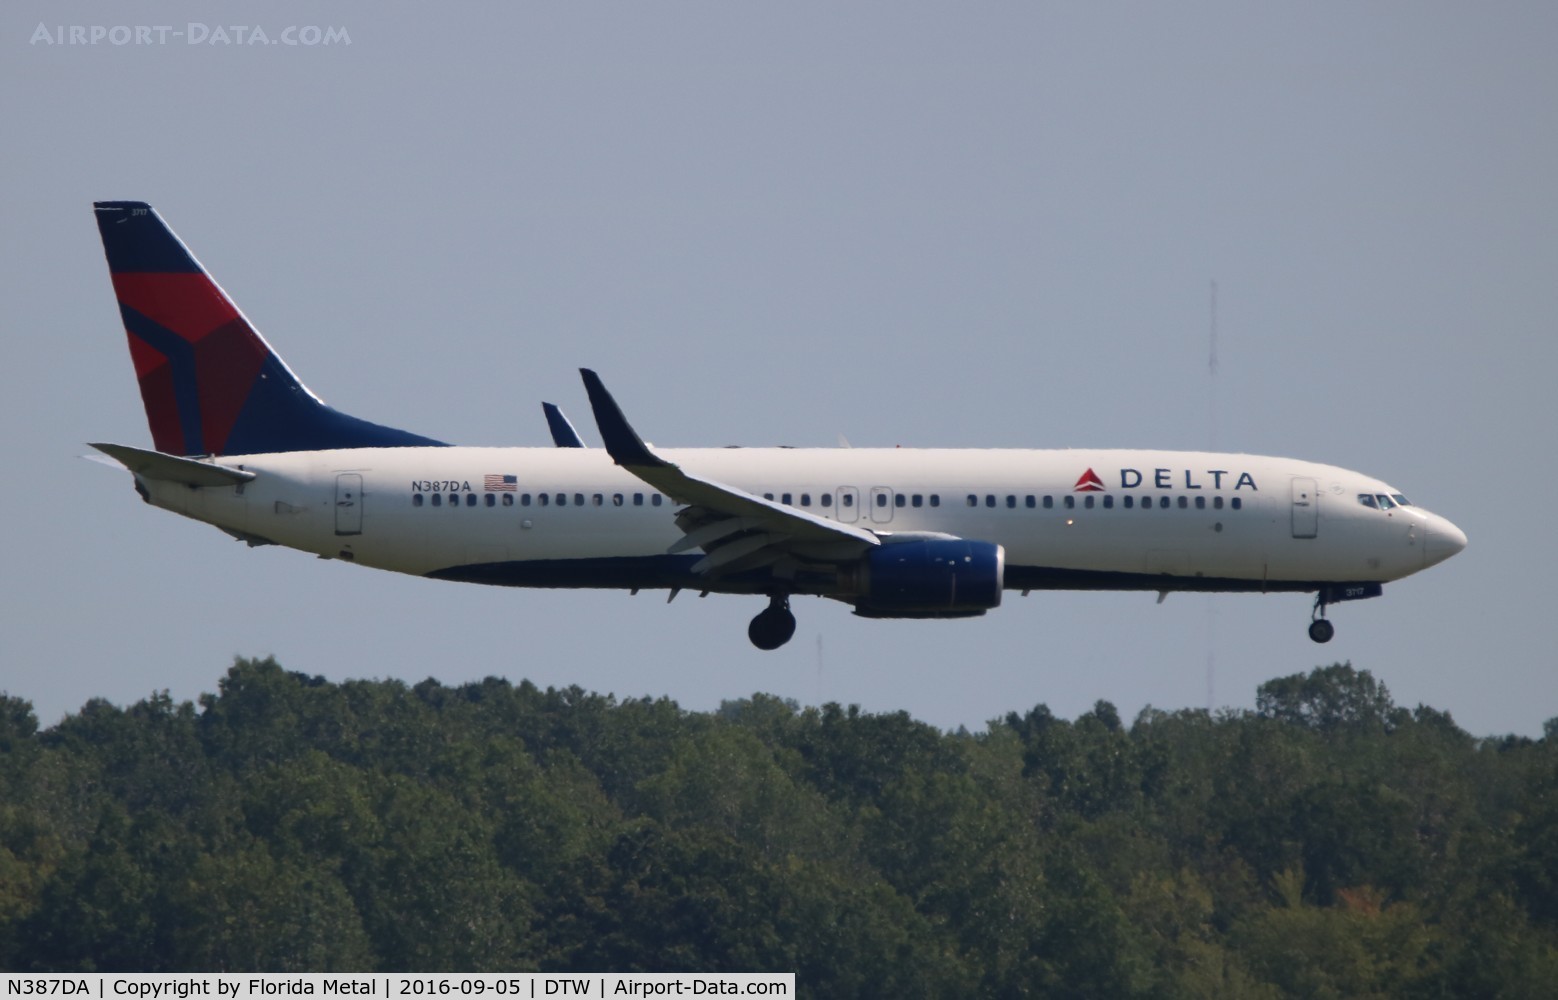 N387DA, 2000 Boeing 737-832 C/N 30374, Delta